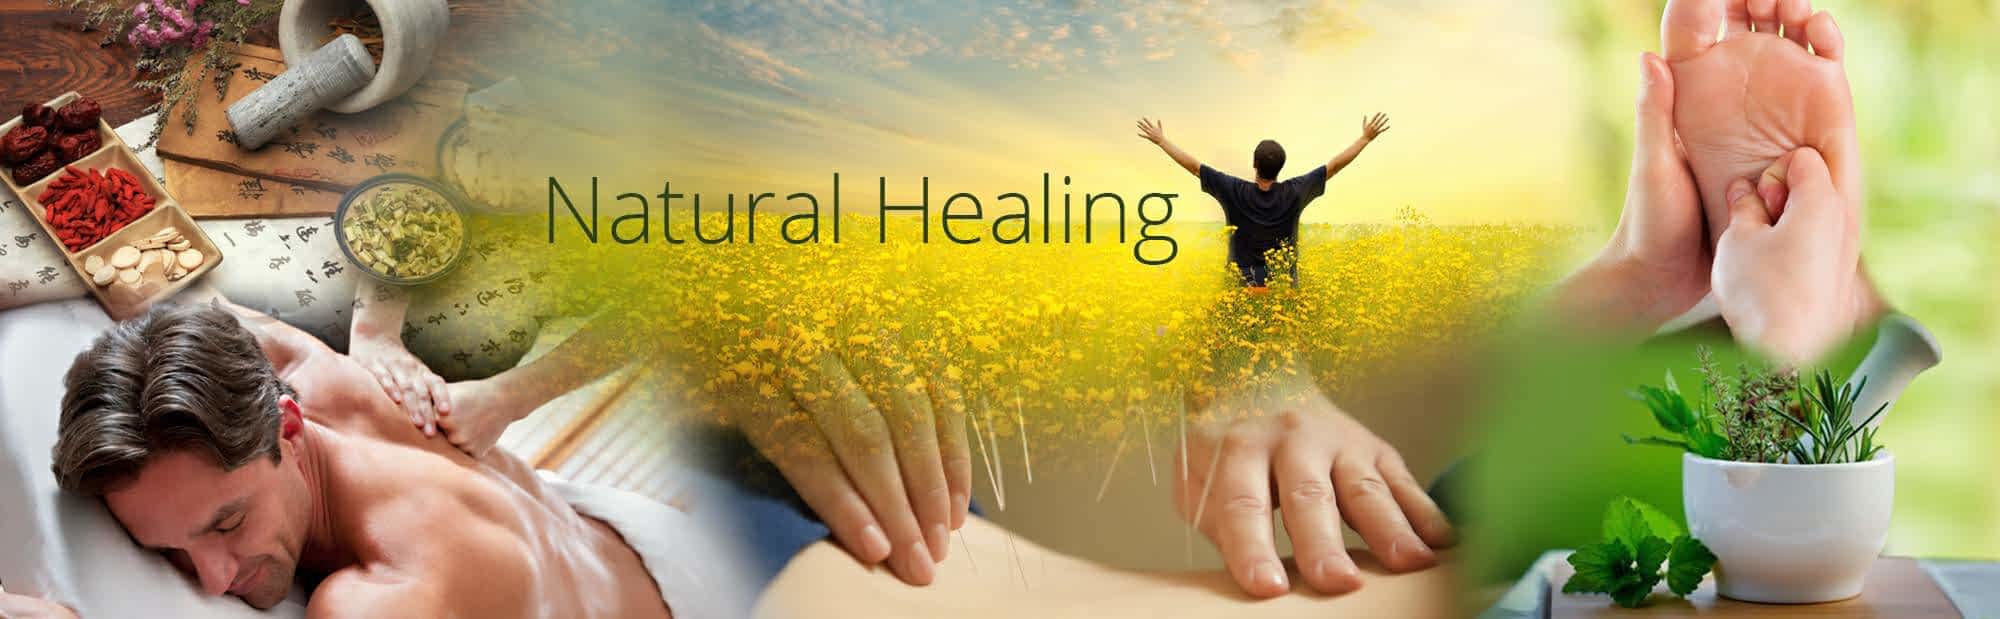 Natural Healing 51